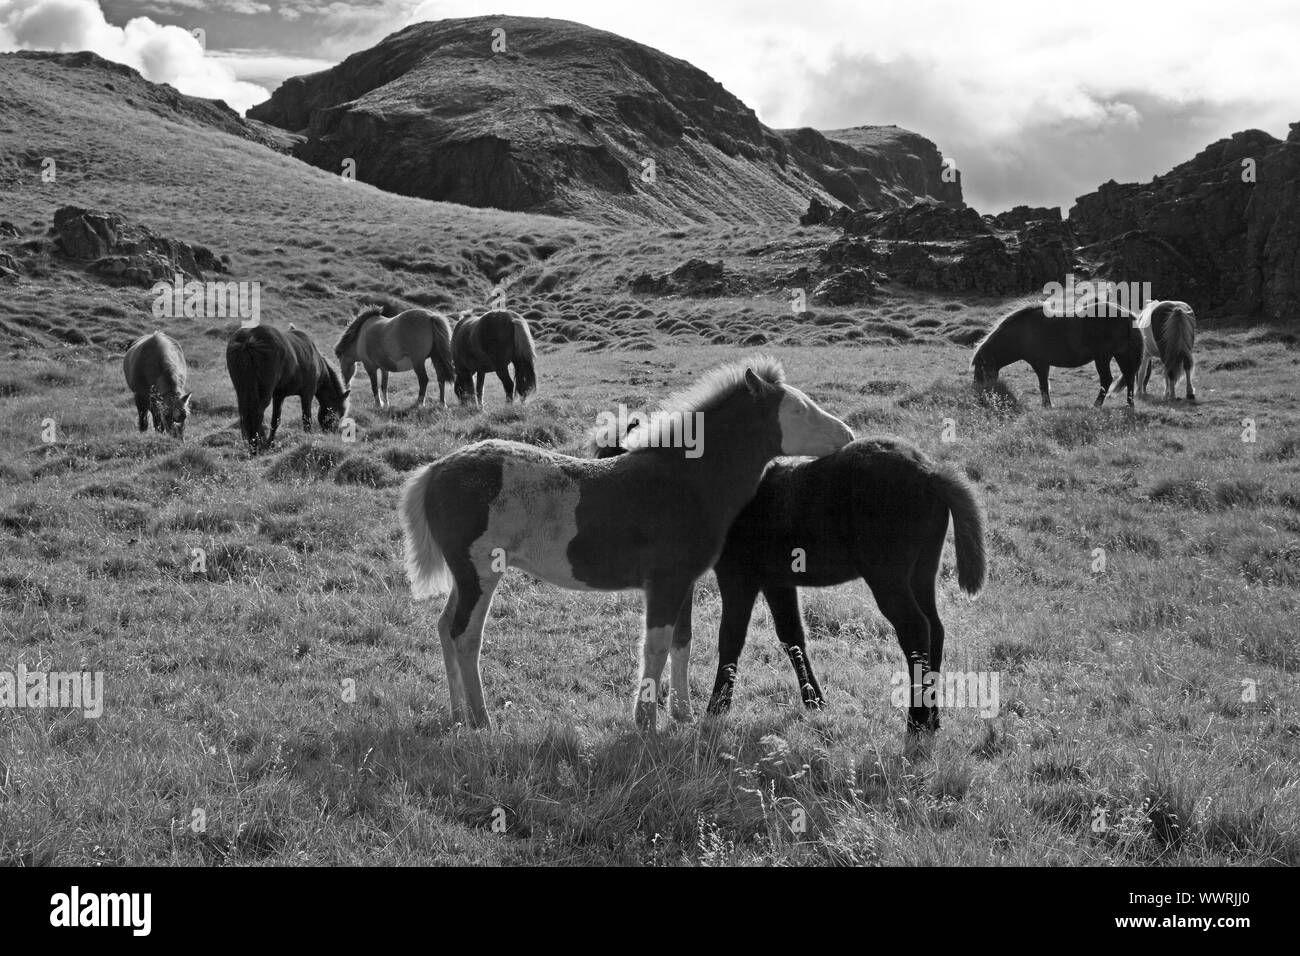 Islandic horse, Icelandic horse, Iceland pony (Equus przewalskii f. caballus), wild horses, Iceland Stock Photo